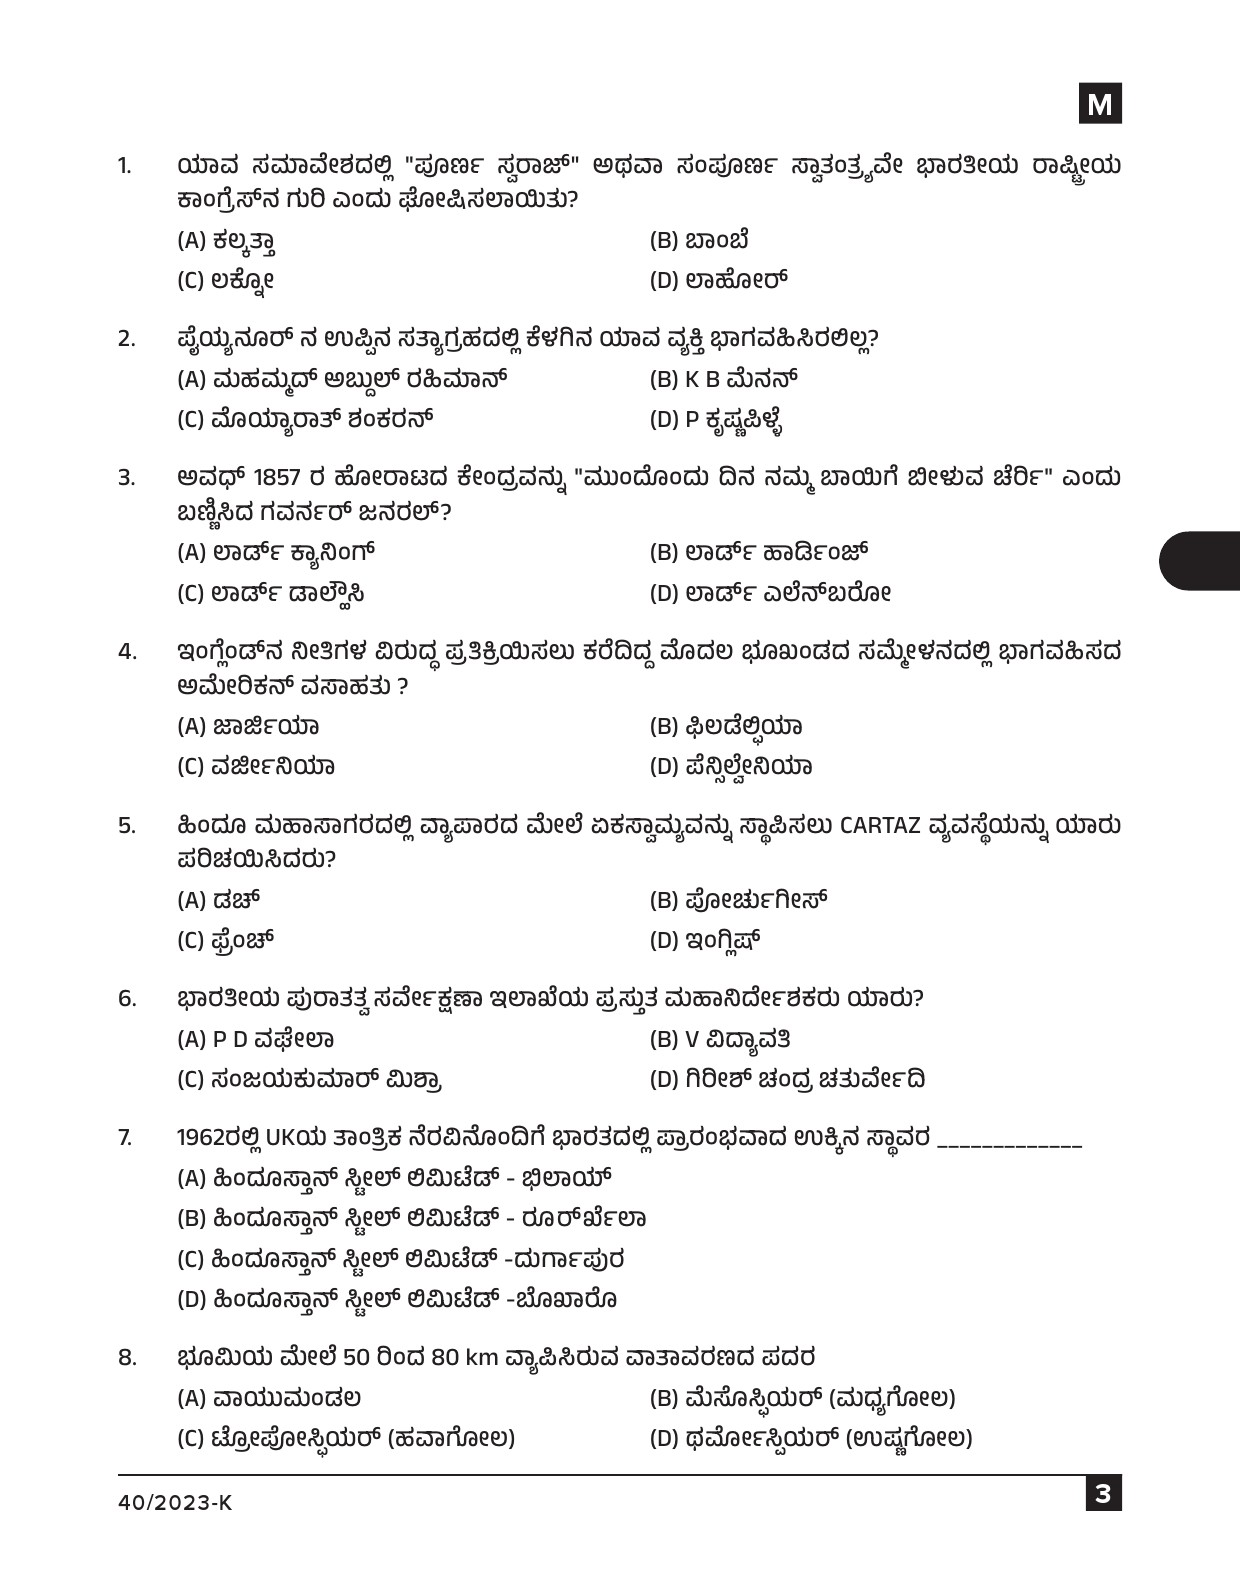 KPSC Data Entry Operator Kannada Exam 2023 Code 0402023 K 2